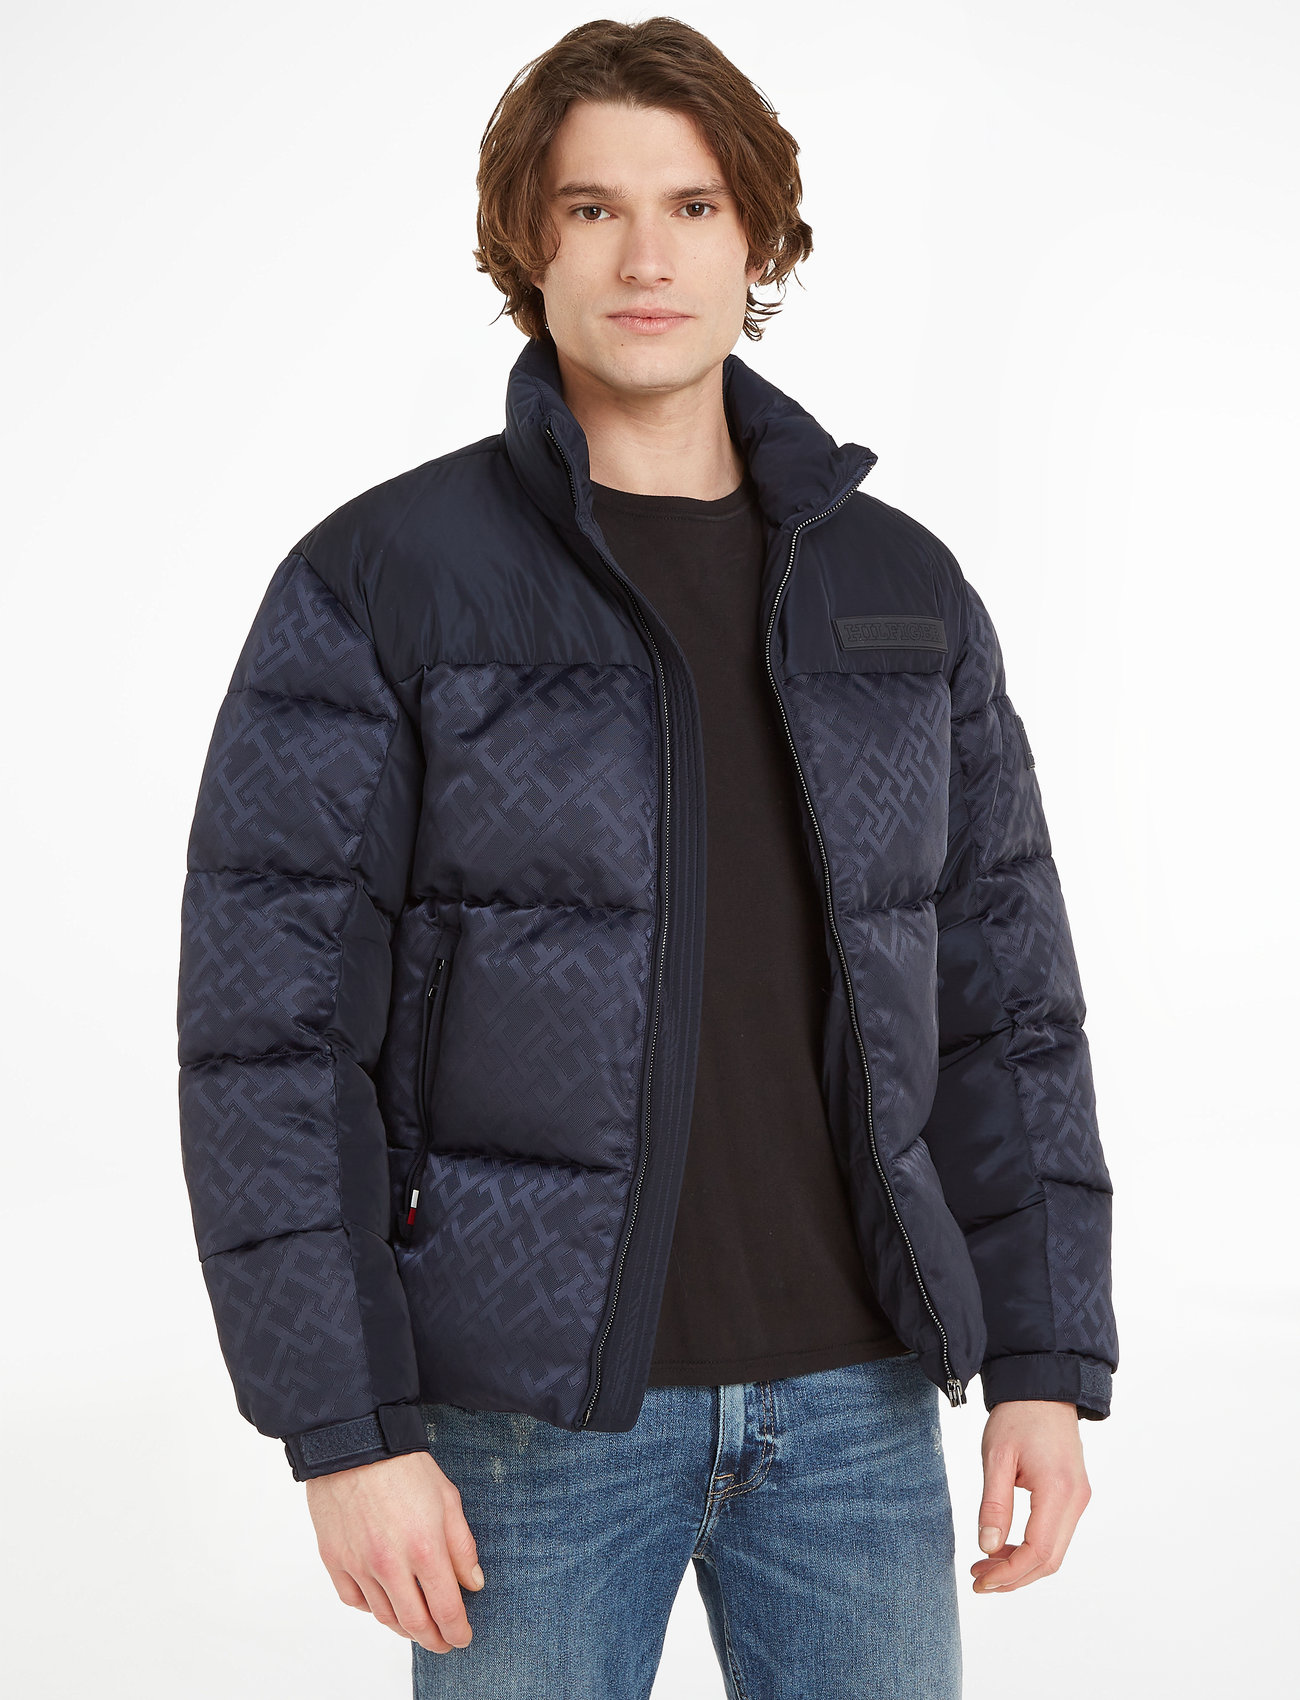 Tommy Hilfiger Outlet: jacket for man - Sky